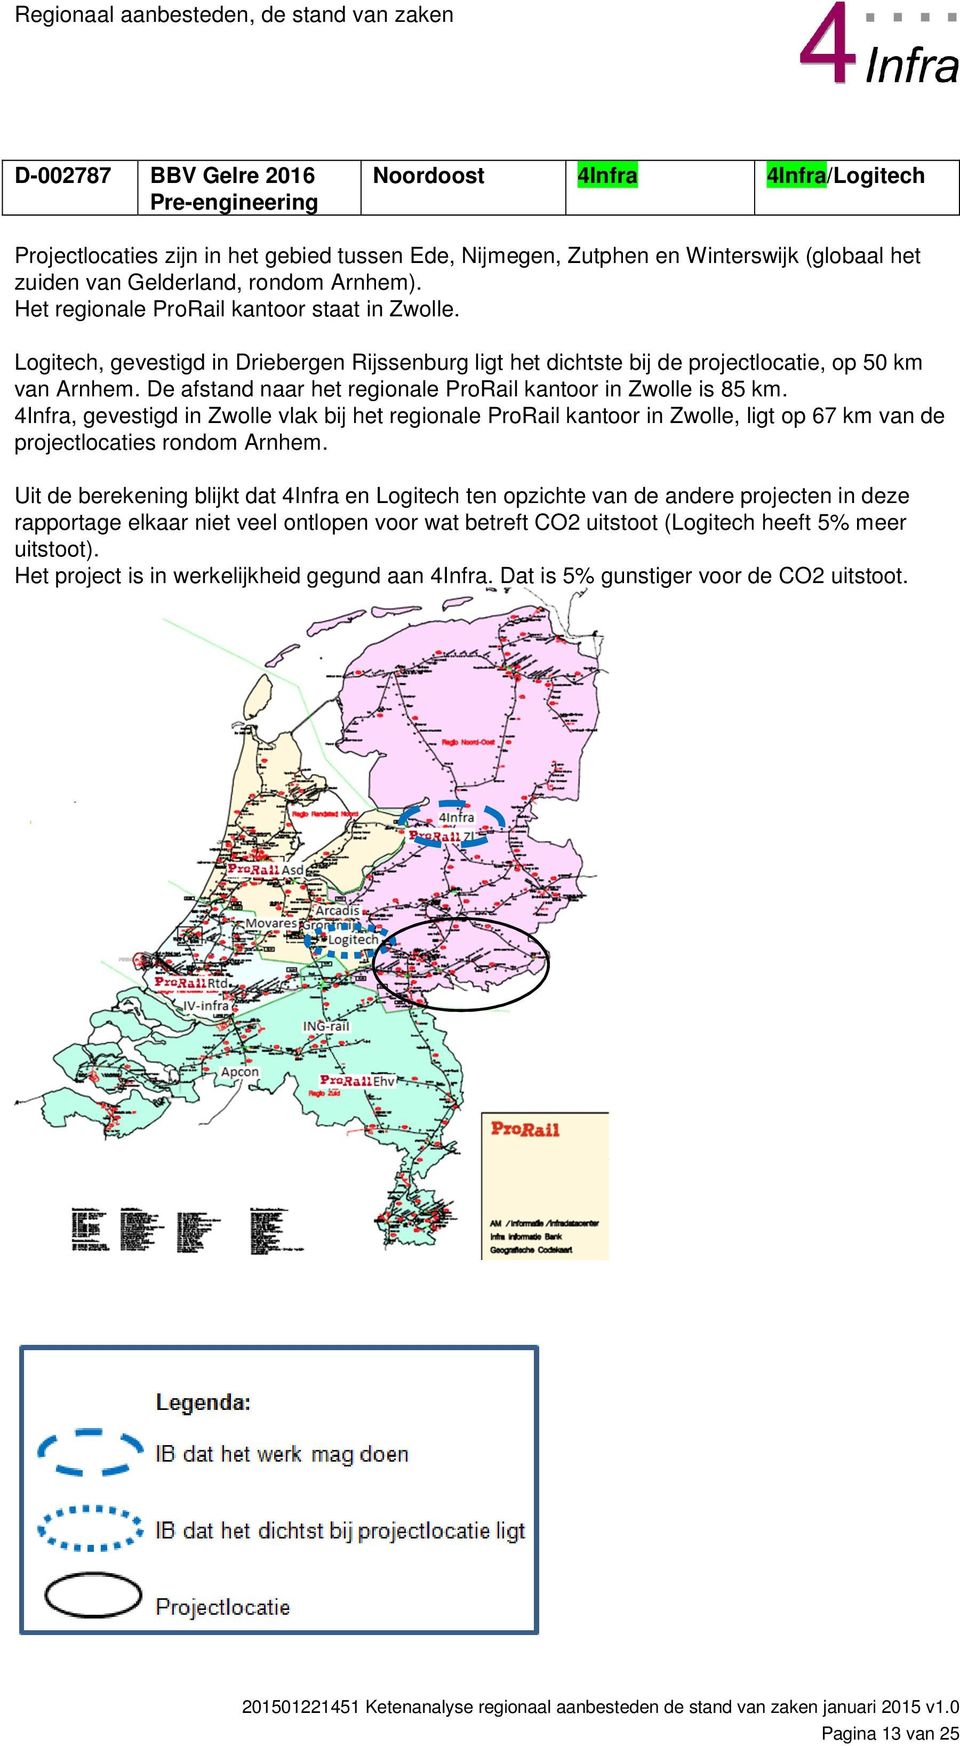 De afstand naar het regionale ProRail kantoor in Zwolle is 85 km. 4Infra, gevestigd in Zwolle vlak bij het regionale ProRail kantoor in Zwolle, ligt op 67 km van de projectlocaties rondom Arnhem.